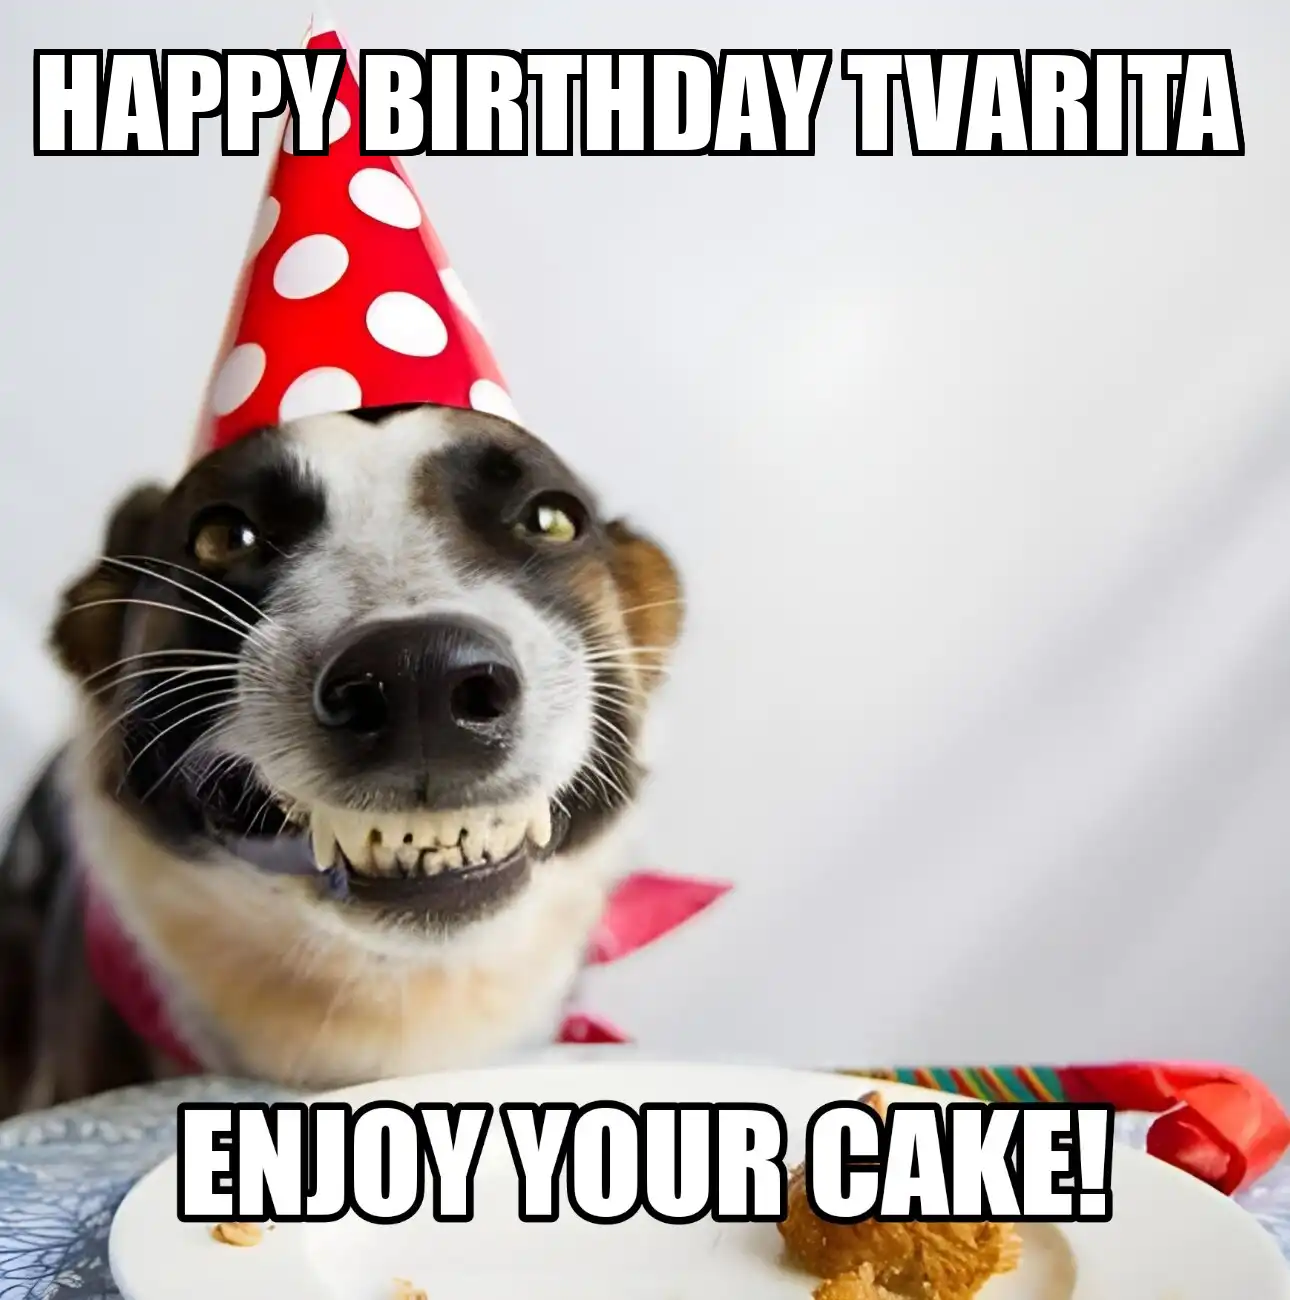 Happy Birthday Tvarita Enjoy Your Cake Dog Meme